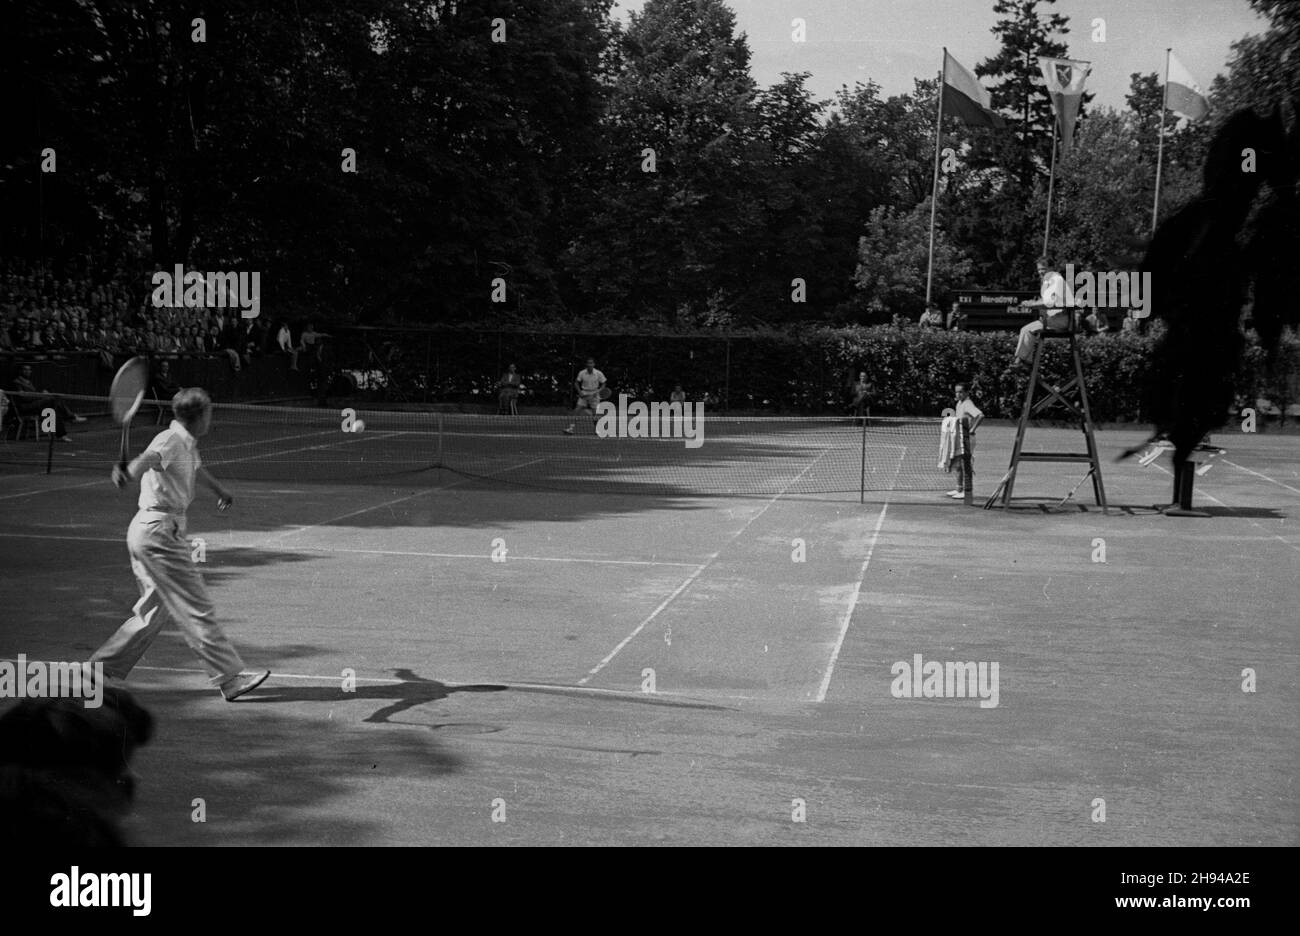 Sopot, 1947-07. XXI Mistrzostwa Polski w Tenisie, rozgrywane w dn. 7-13 lipca. na kortach Miejskiego Klubu Sportowego. Nz. pojedynek mistrzów: Józef Hebda (L) i W³adys³aw Skonecki (P). Dok³adny dzieñ wydarzenia nieustalony.  bk/ak  PAP        Sopot, July 1947. The 21st Poland Tennis Championship in the Sopot City Sport Club (July 7-13). Pictured: a battle of giants - Jozef Hebda (left) vs. Wladyslaw Skonecki (right).  bk/ak  PAP Stock Photo